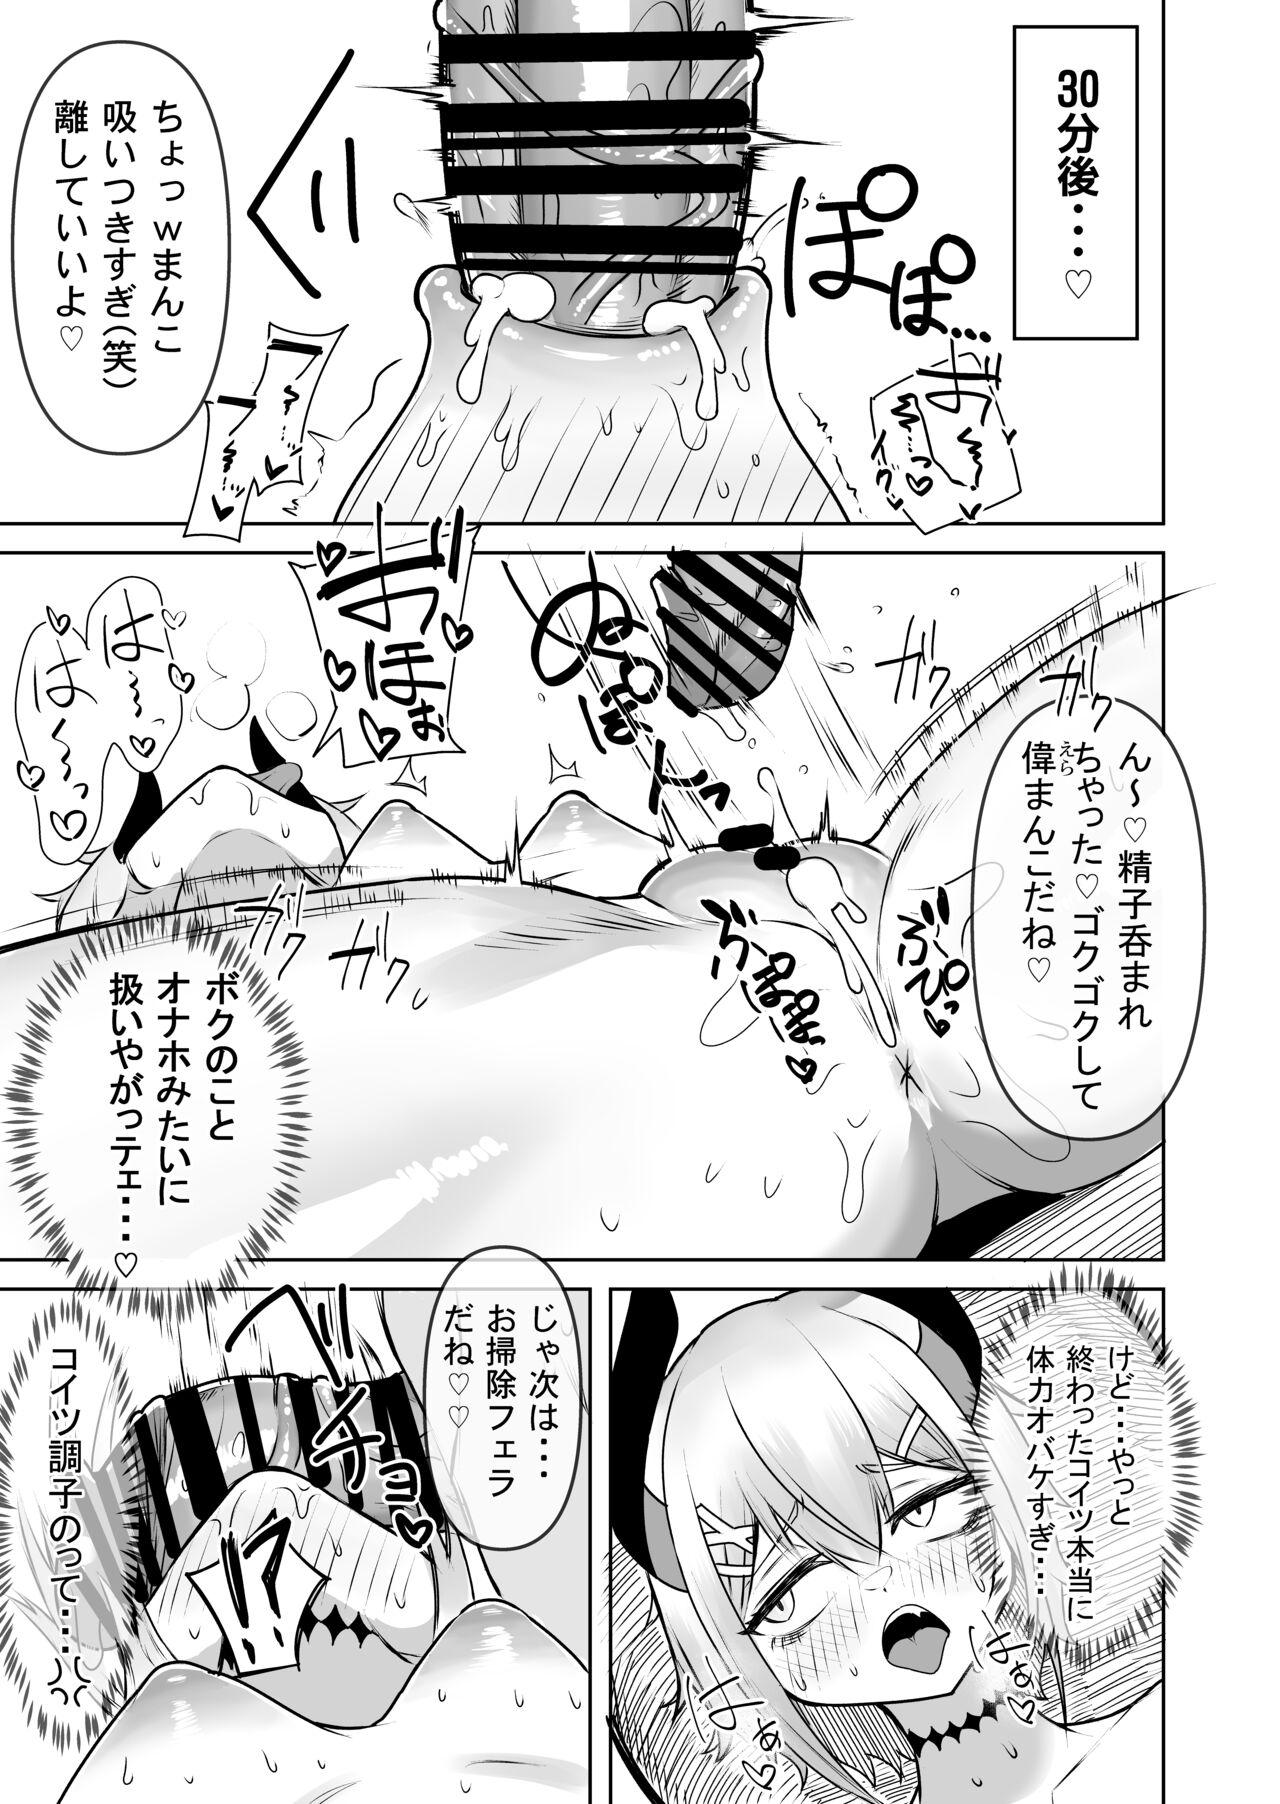 Guys Levi-chan to no natsu - Nijisanji Homemade - Page 7